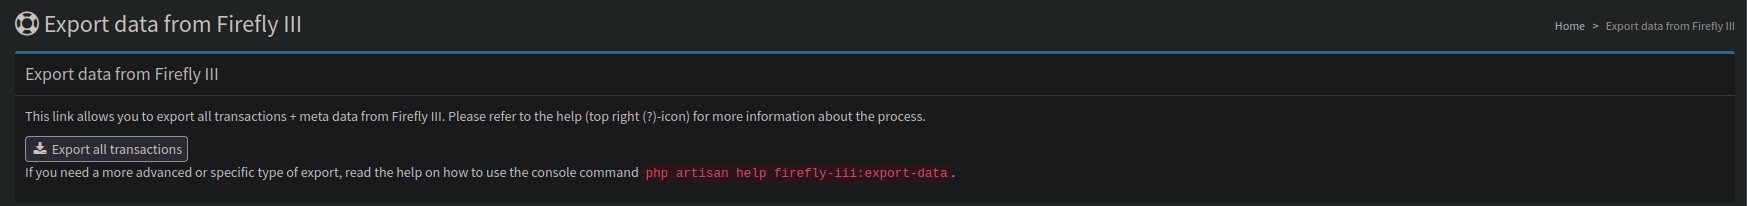 export_data